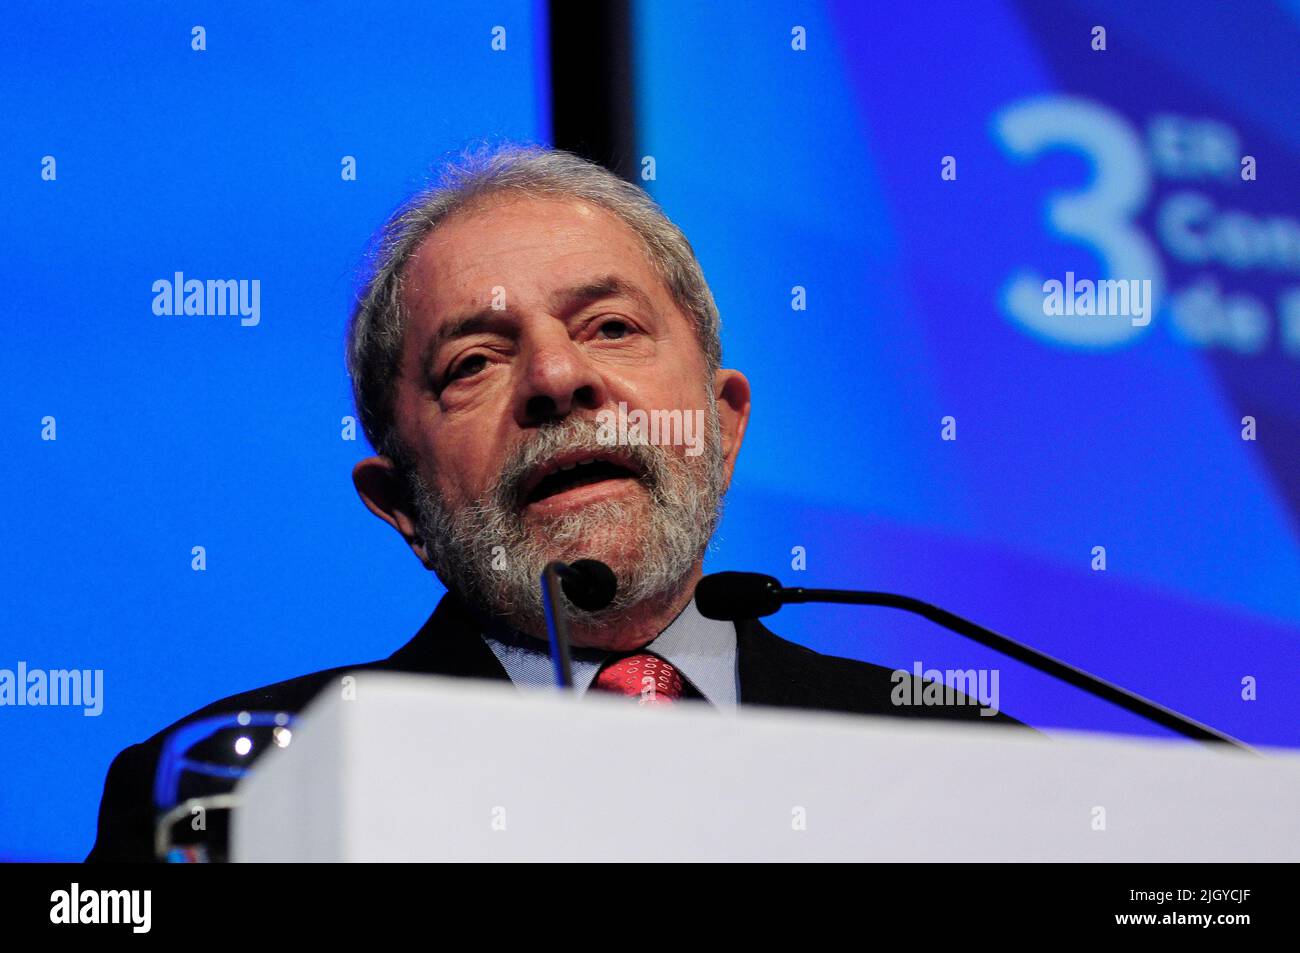 L'ancien président brésilien Luiz Inacio da Silva connu sous le nom de Lula lors d'une conférence Banque D'Images